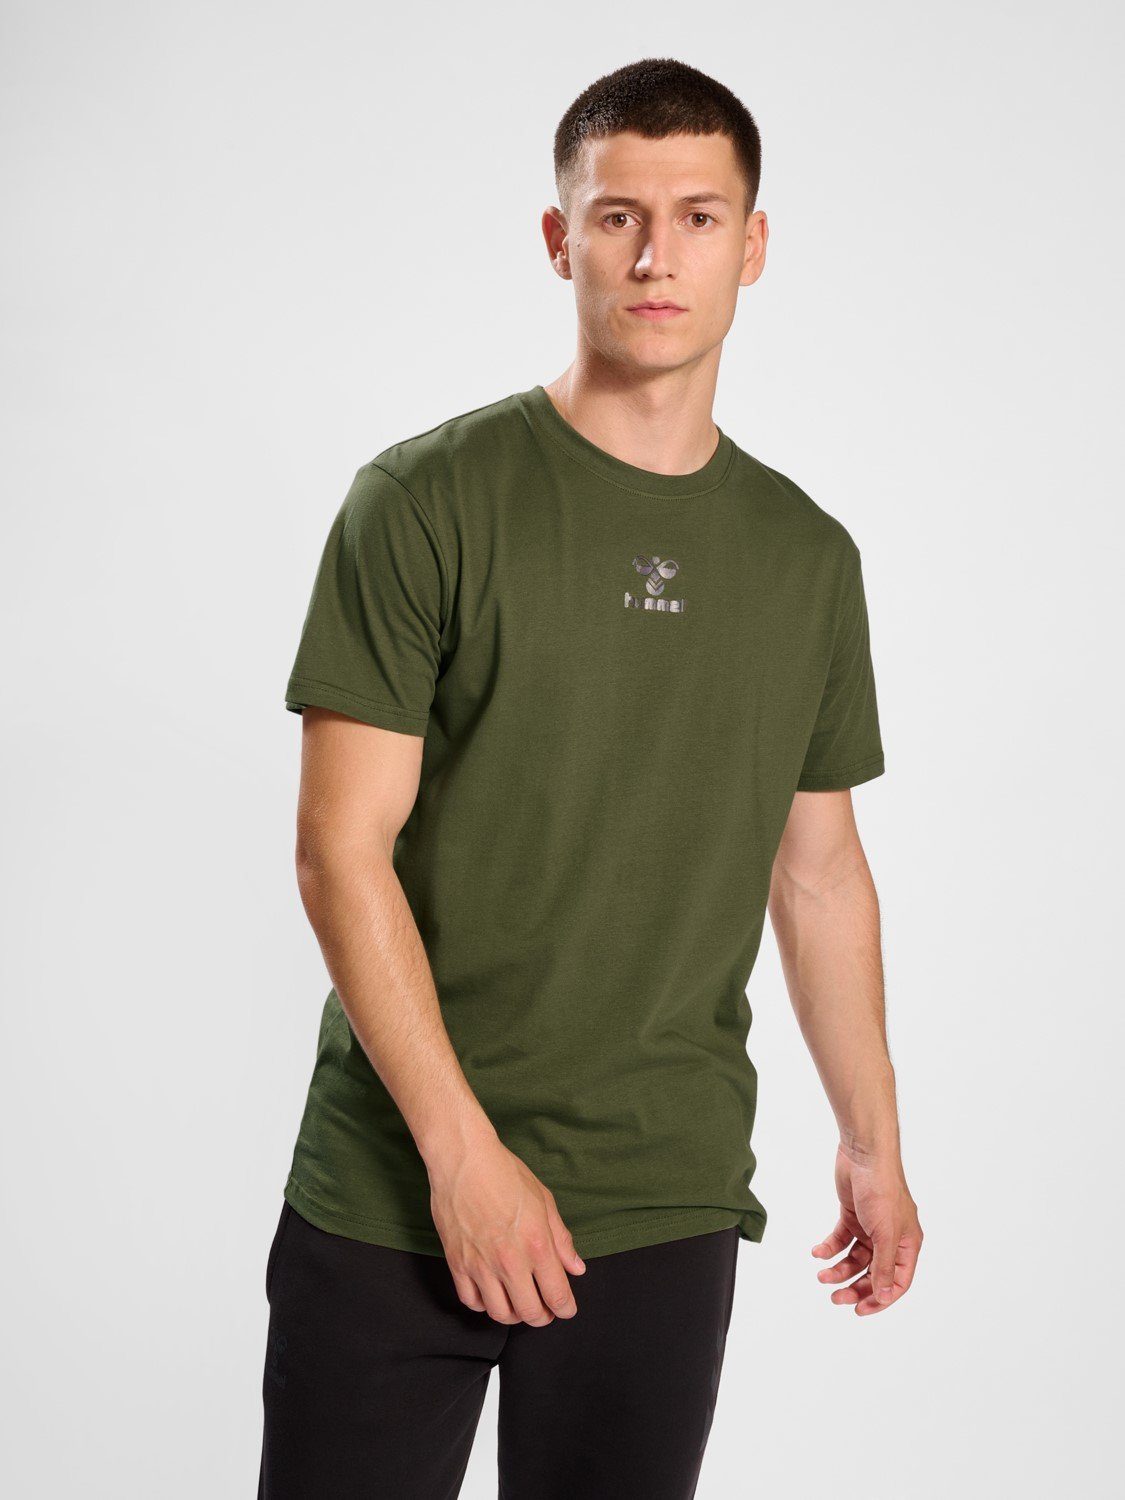 Sport hummel T-Shirt Jersey in Funktionsshirt Kurzarm T-Shirt Olive 5788